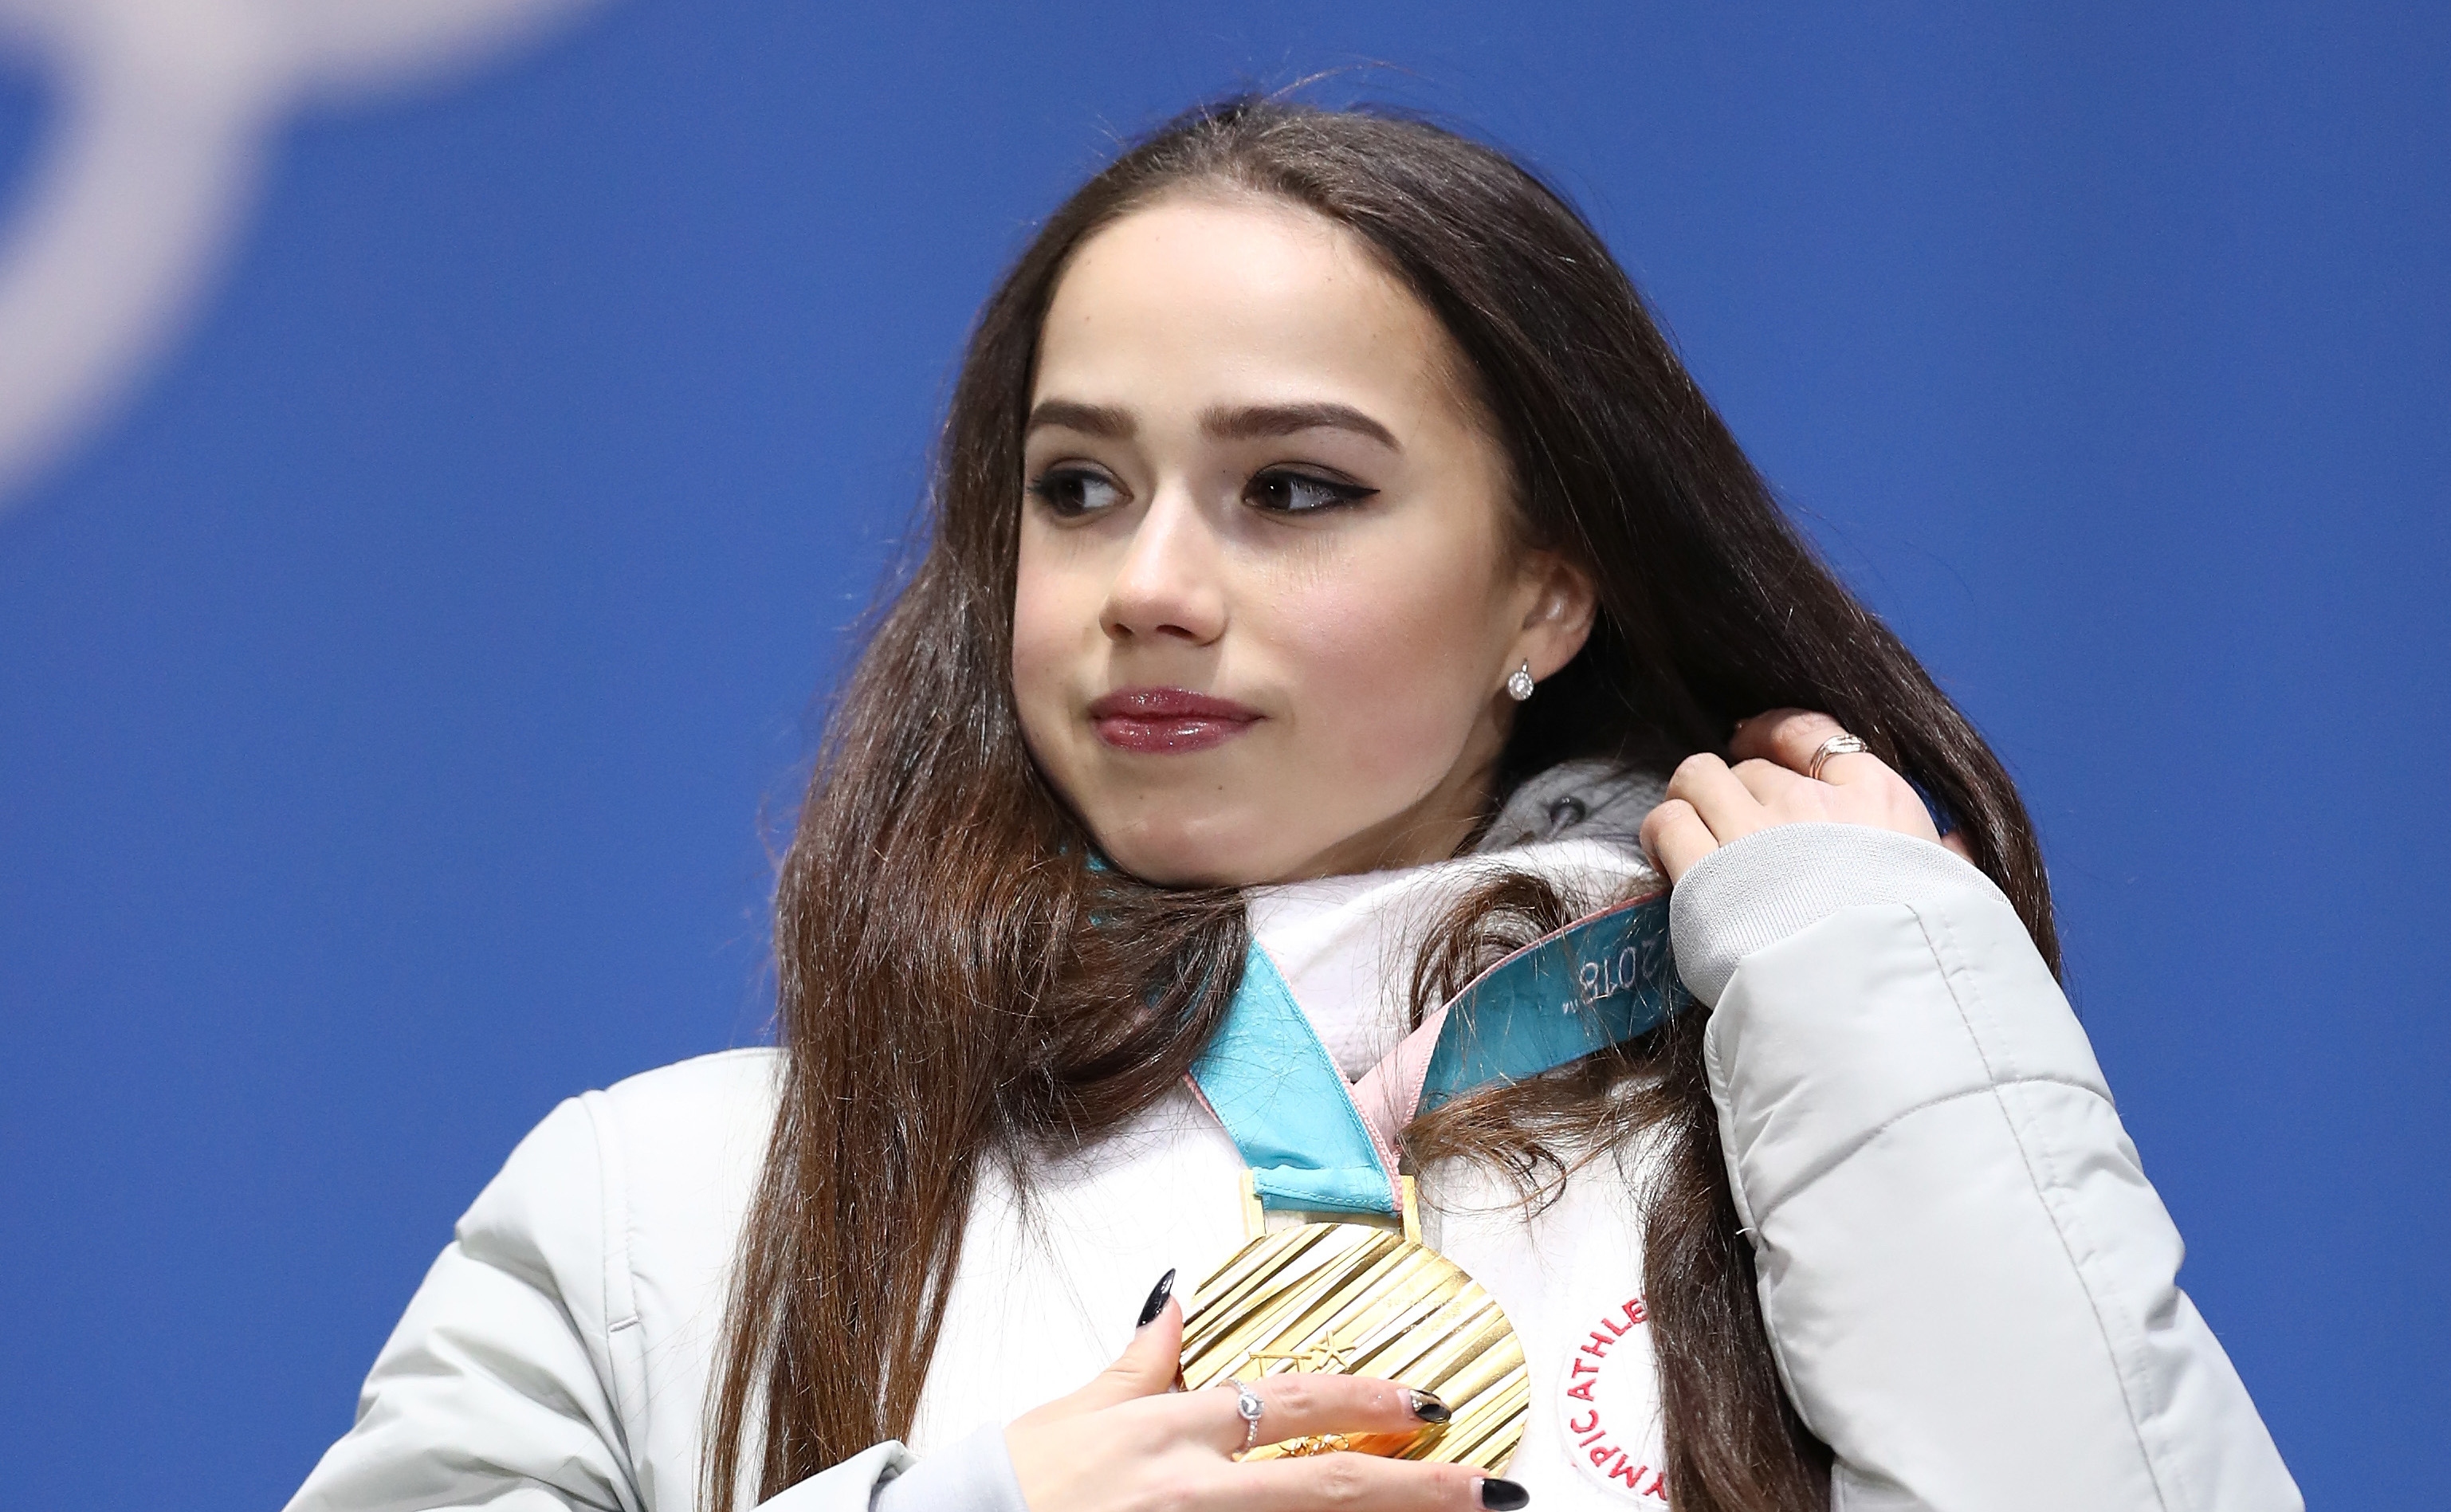 Олимпийската шампионка по фигурно пързаляне от Пьончан 2018 Алина Загитова